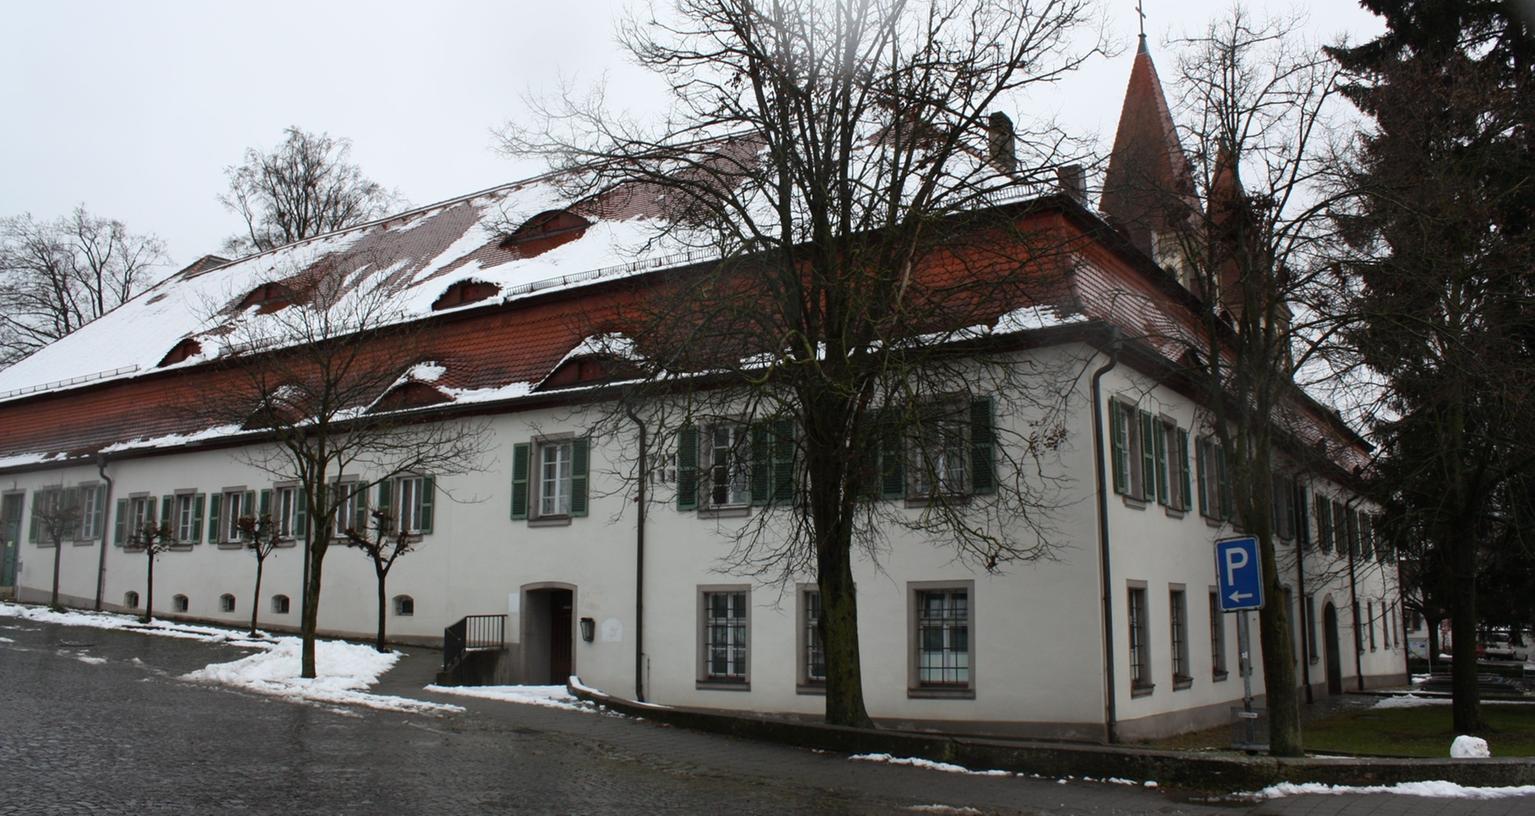 Zankapfel Kloster Heidenheim: Der Streit um das ehemalige Bene­diktiner- Kloster im Landkreis Wei­ßenburg- Gunzenhausen kulminiert am Sonntag in einem Bür­gerentscheid.